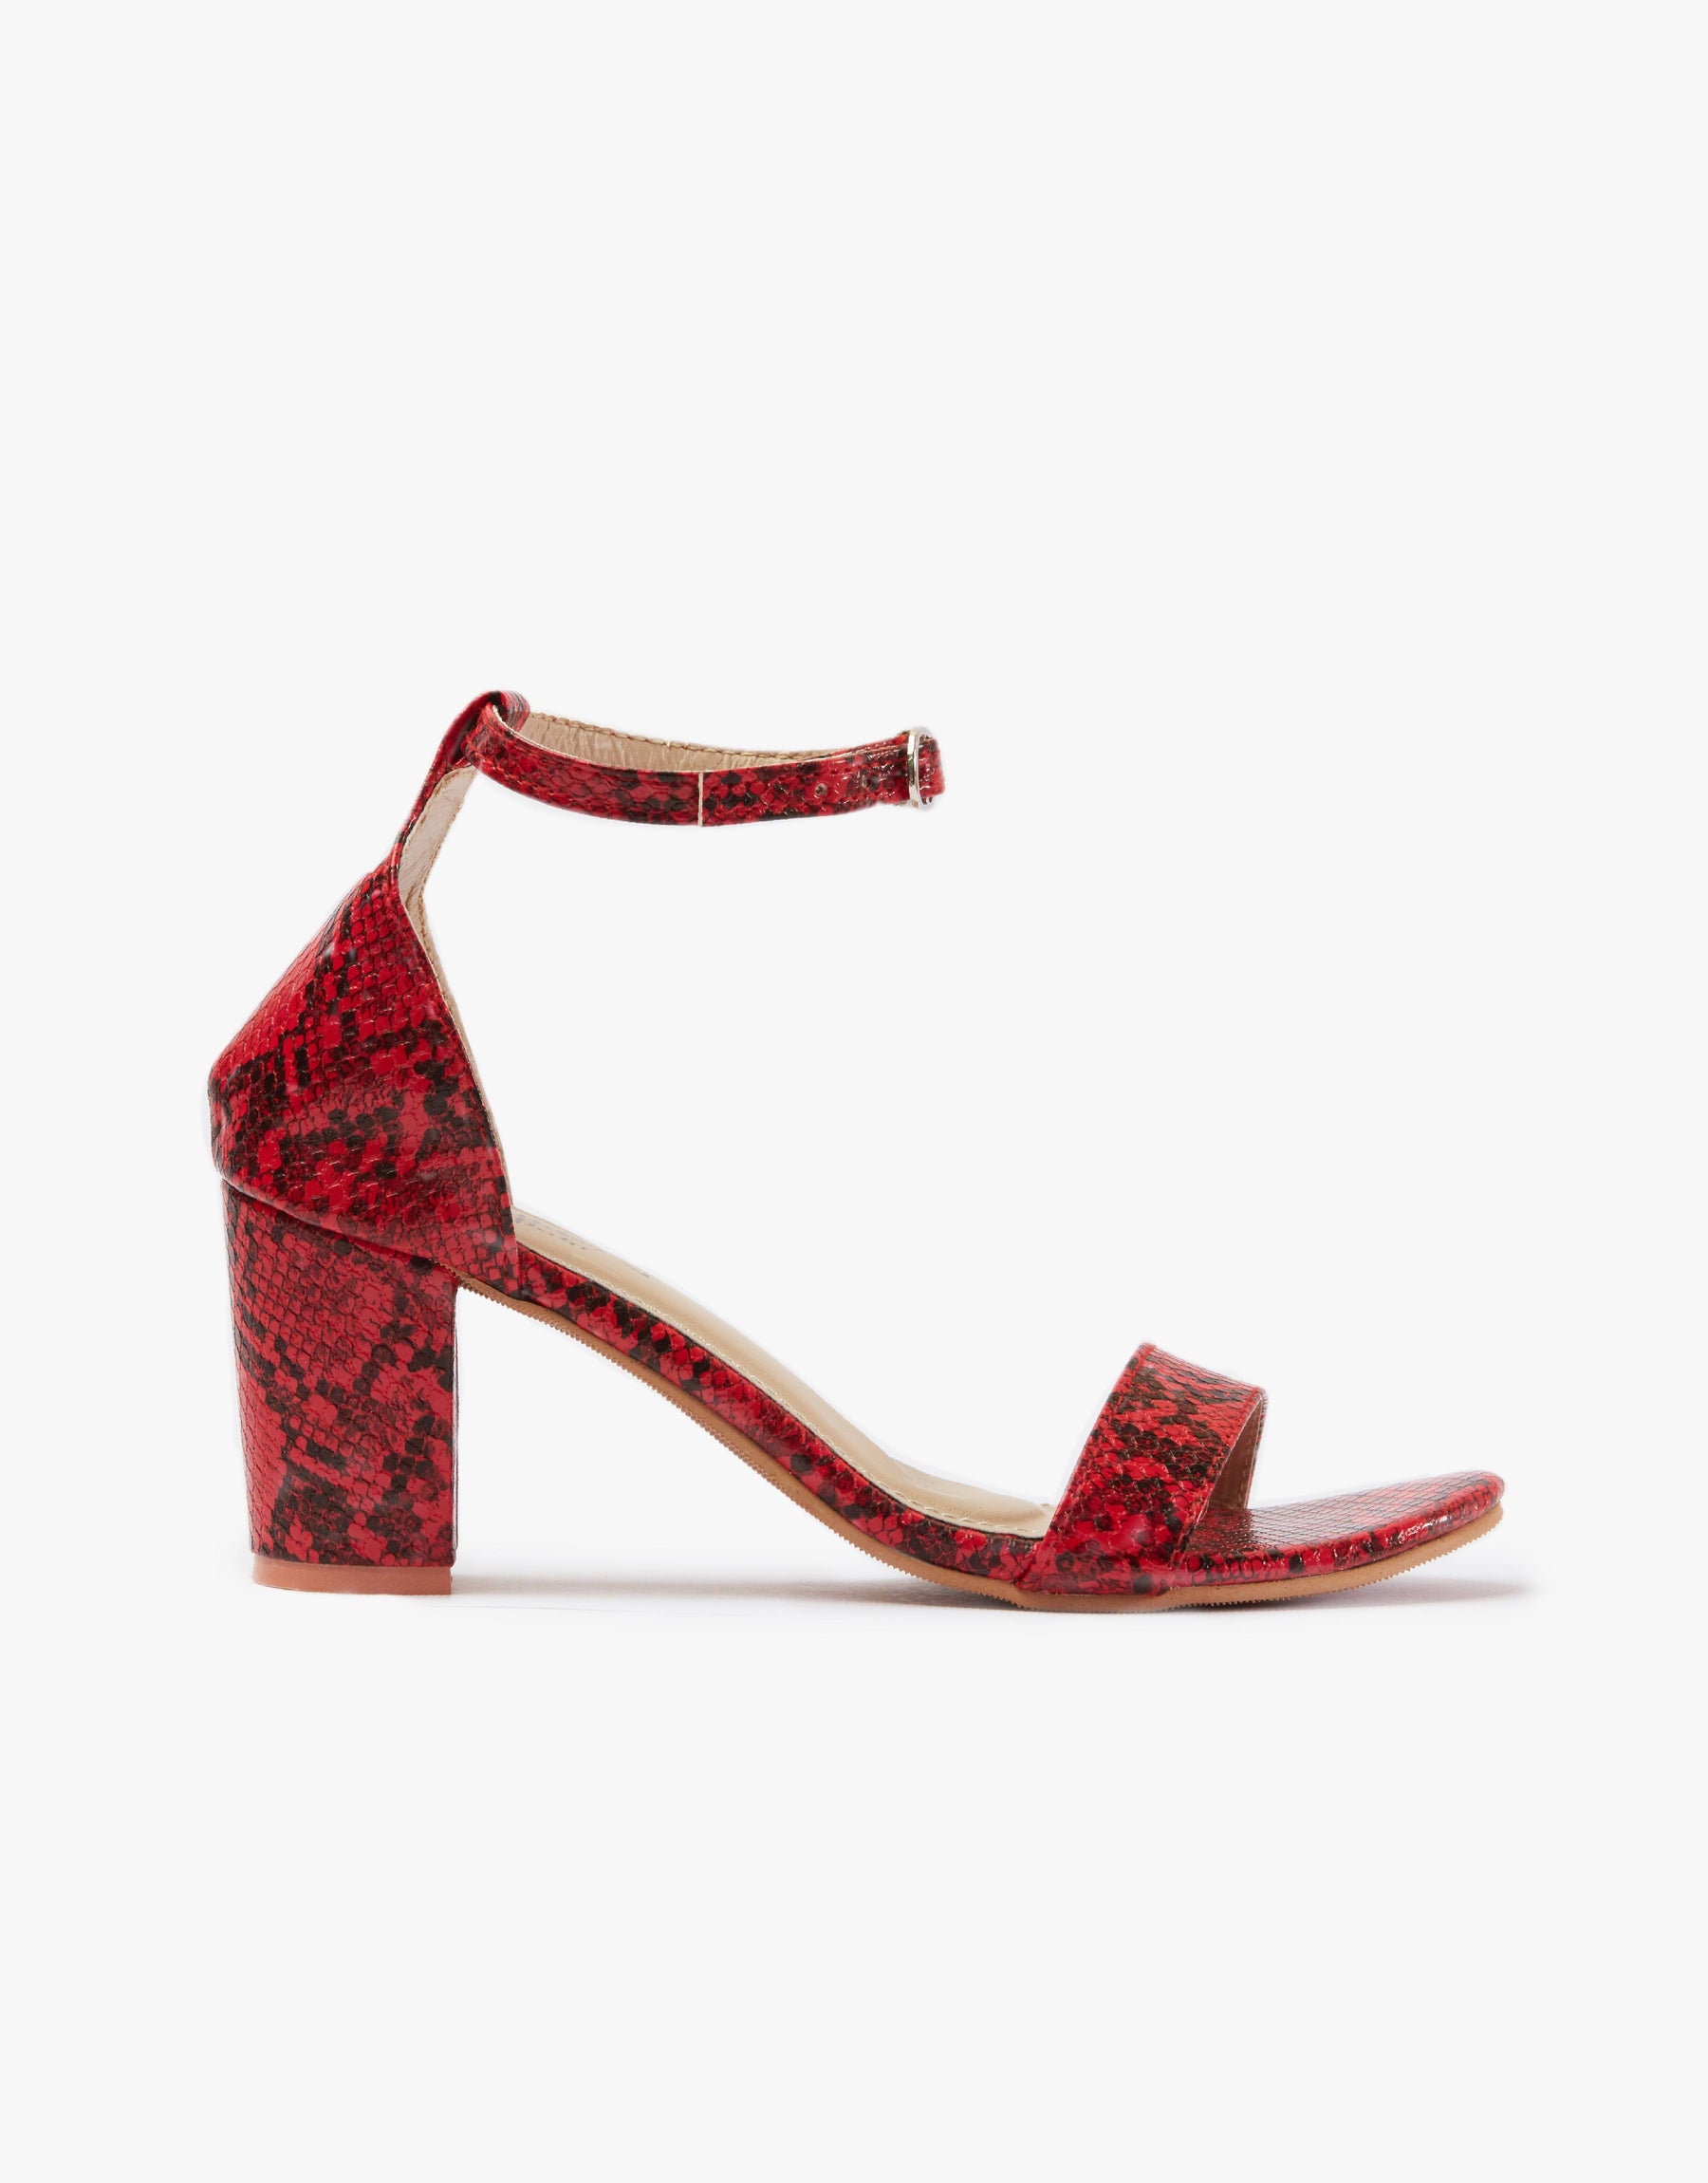 Buy Embellished Asymmetry Heels Online | SKU: 35-110-21-37-Metro Shoes